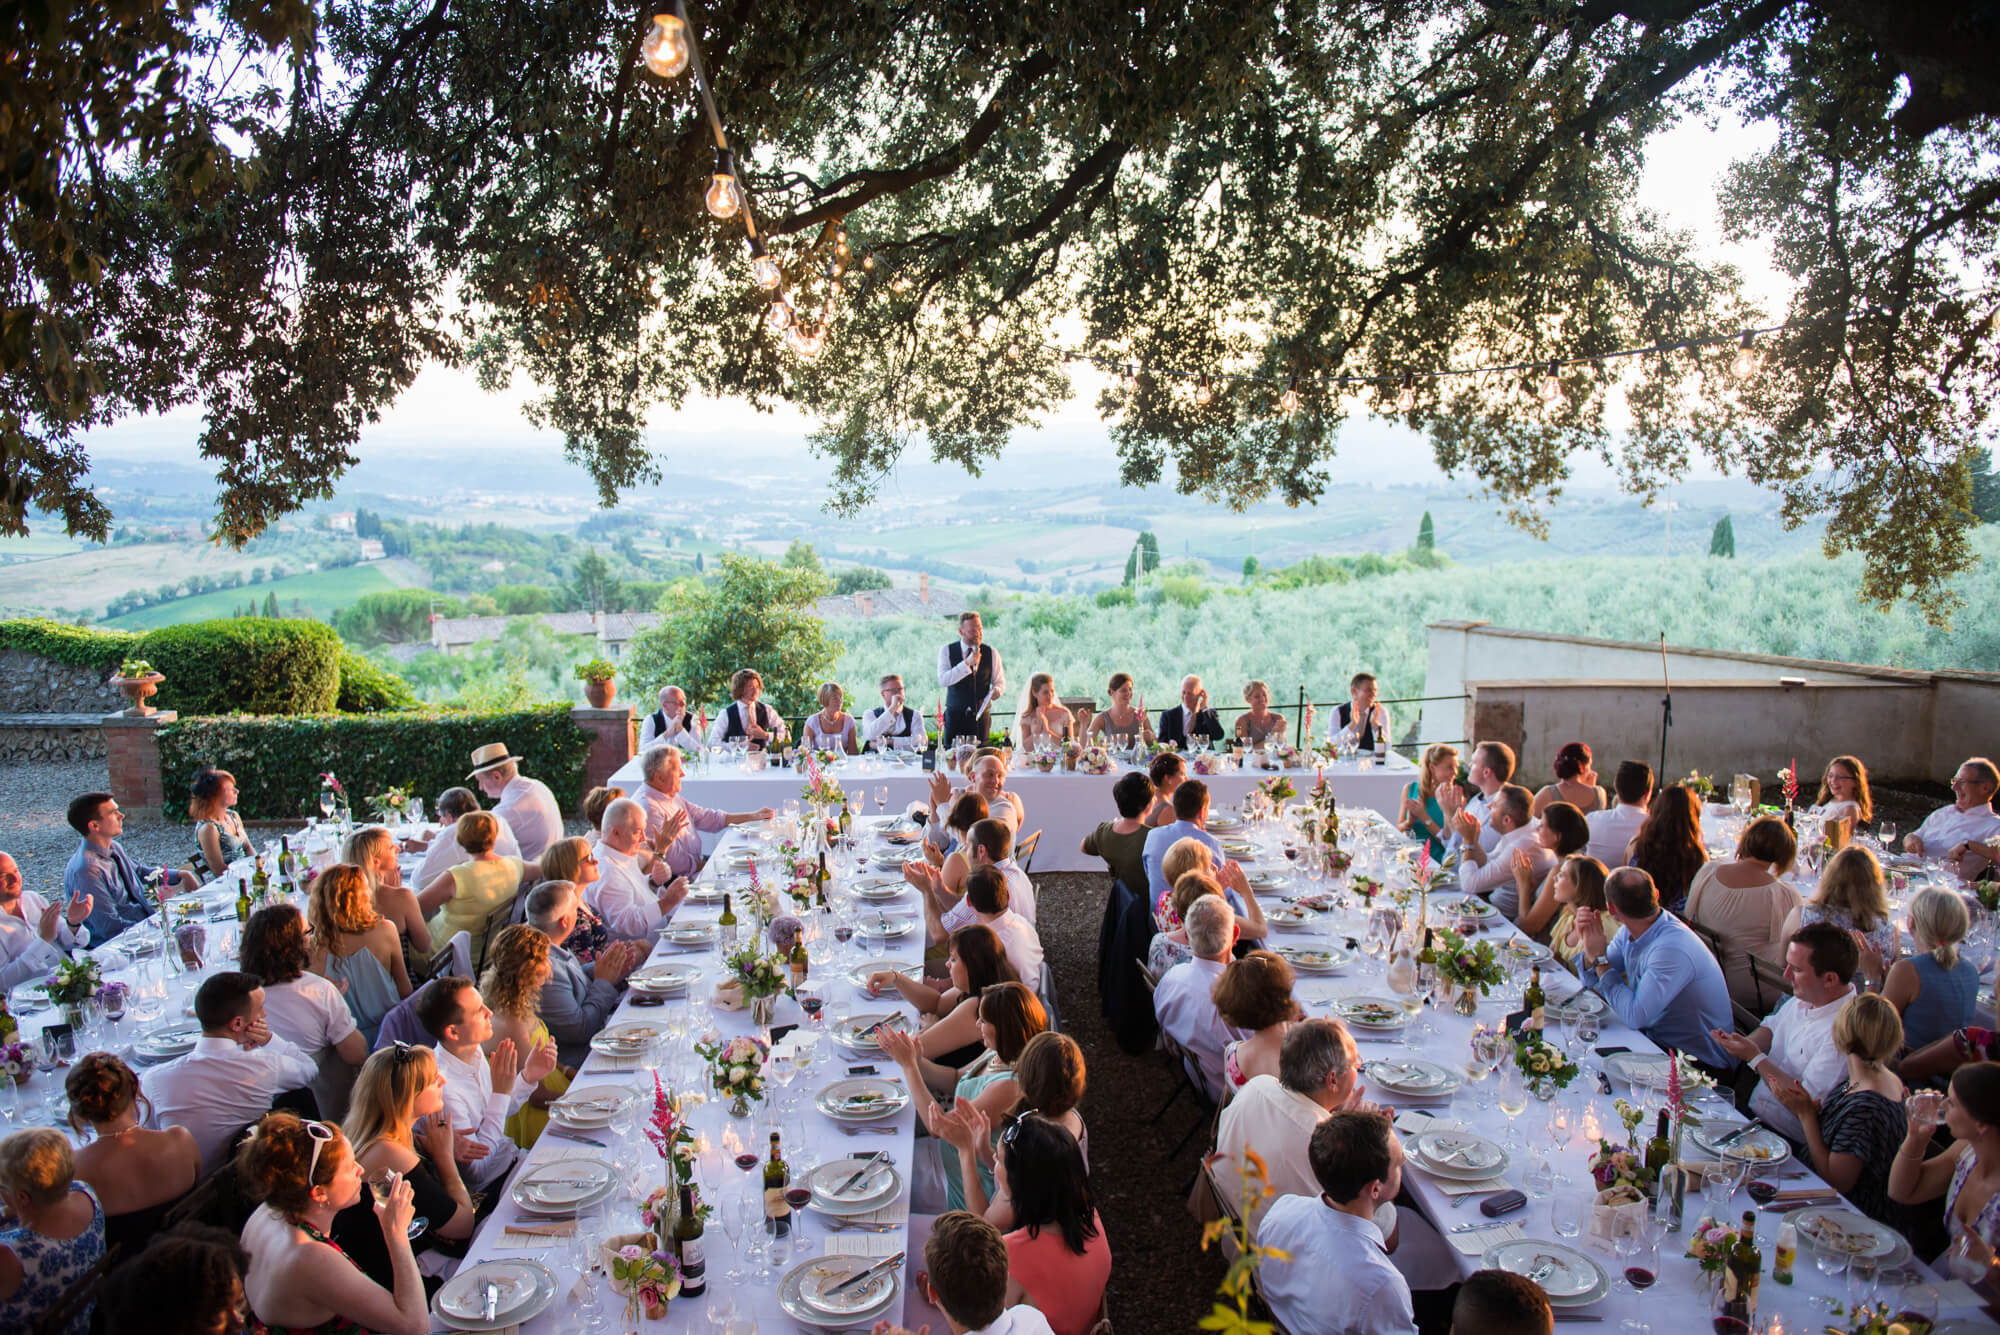 wedding breakfast under an oak tree in tuscany with festoon lighting